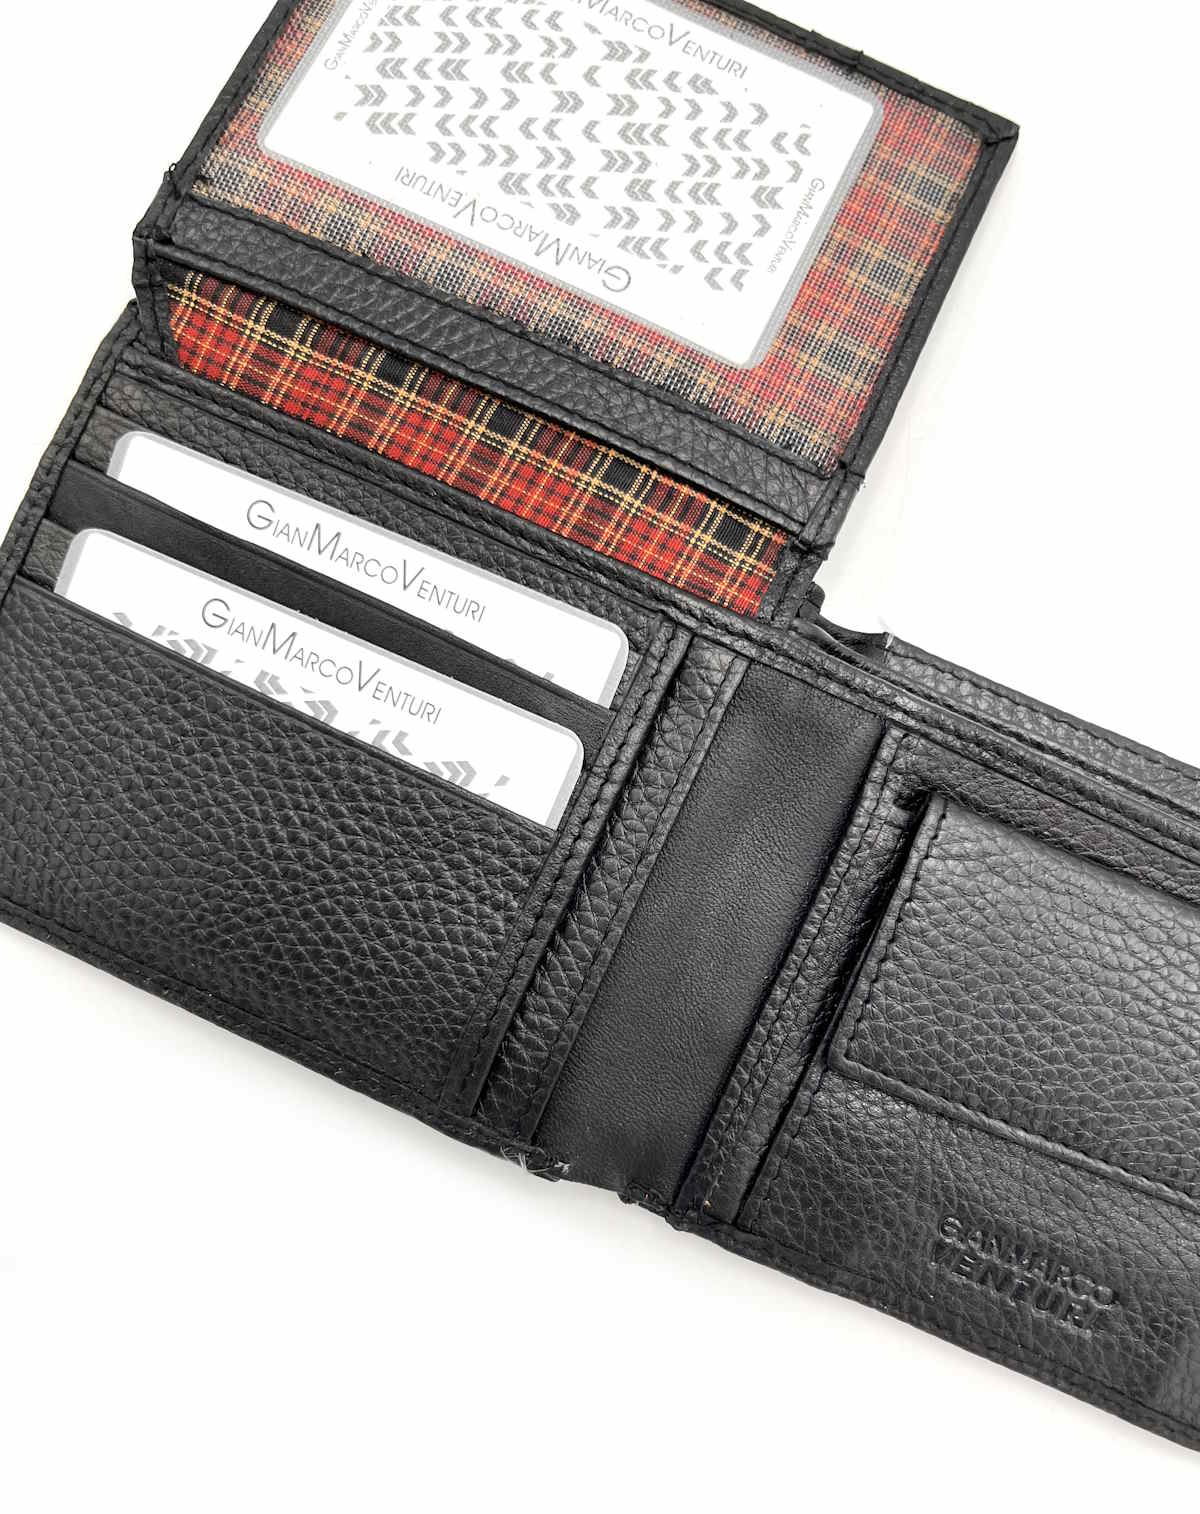 Genuine leather Wallet, Brand GMV, art. GMV4010-2